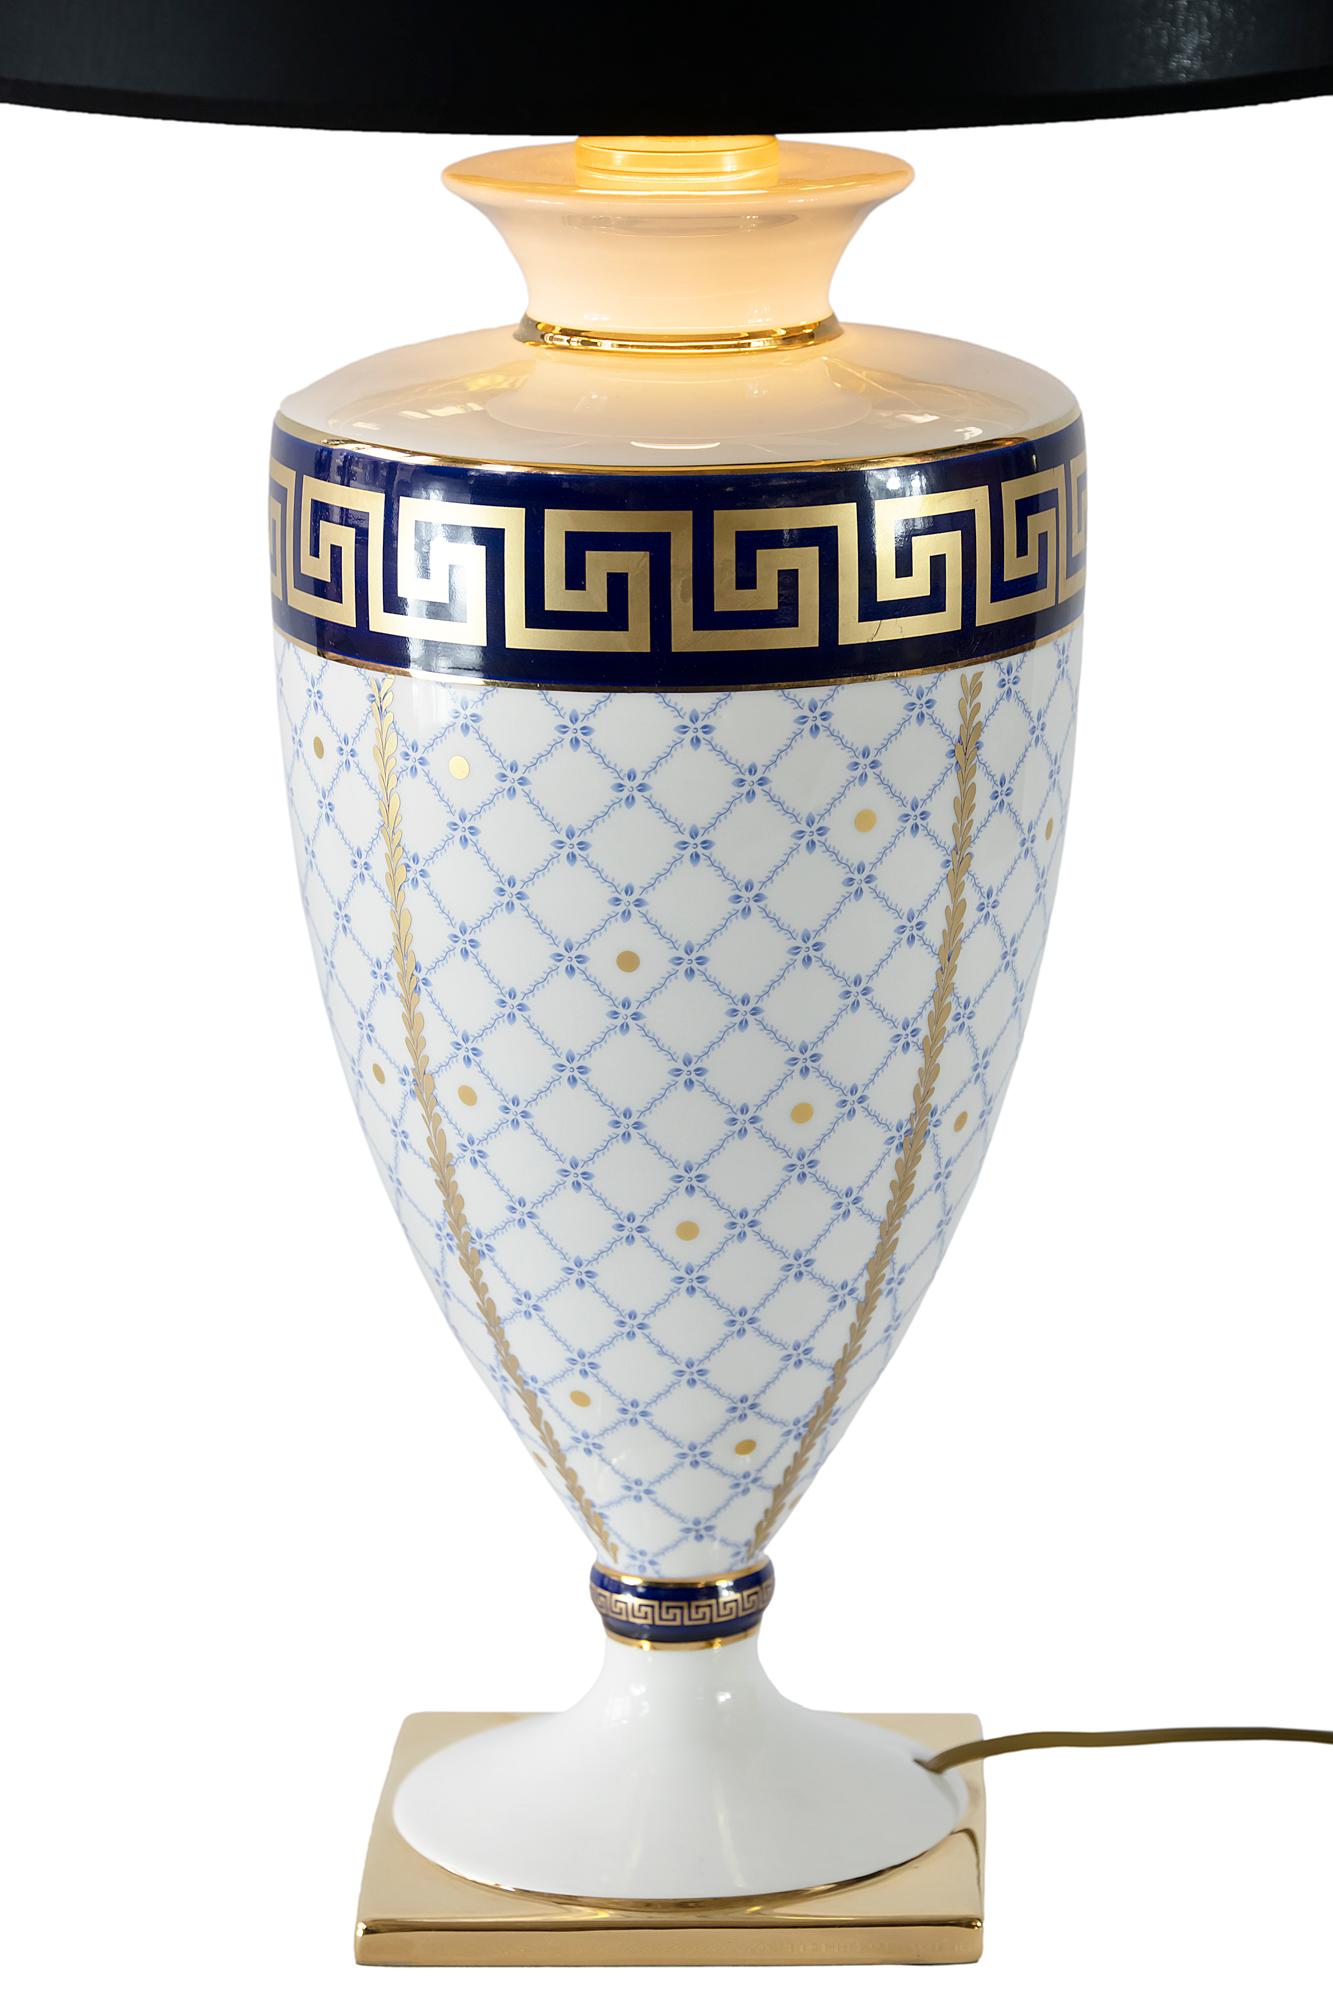 Porzellan-Tischlampe mit kobalt-hellblauem und goldenem Dekor von Sarri, hergestellt in Italien.
Neu gefertigter Farbton.
Lampe mit E27-Glühbirne.
   